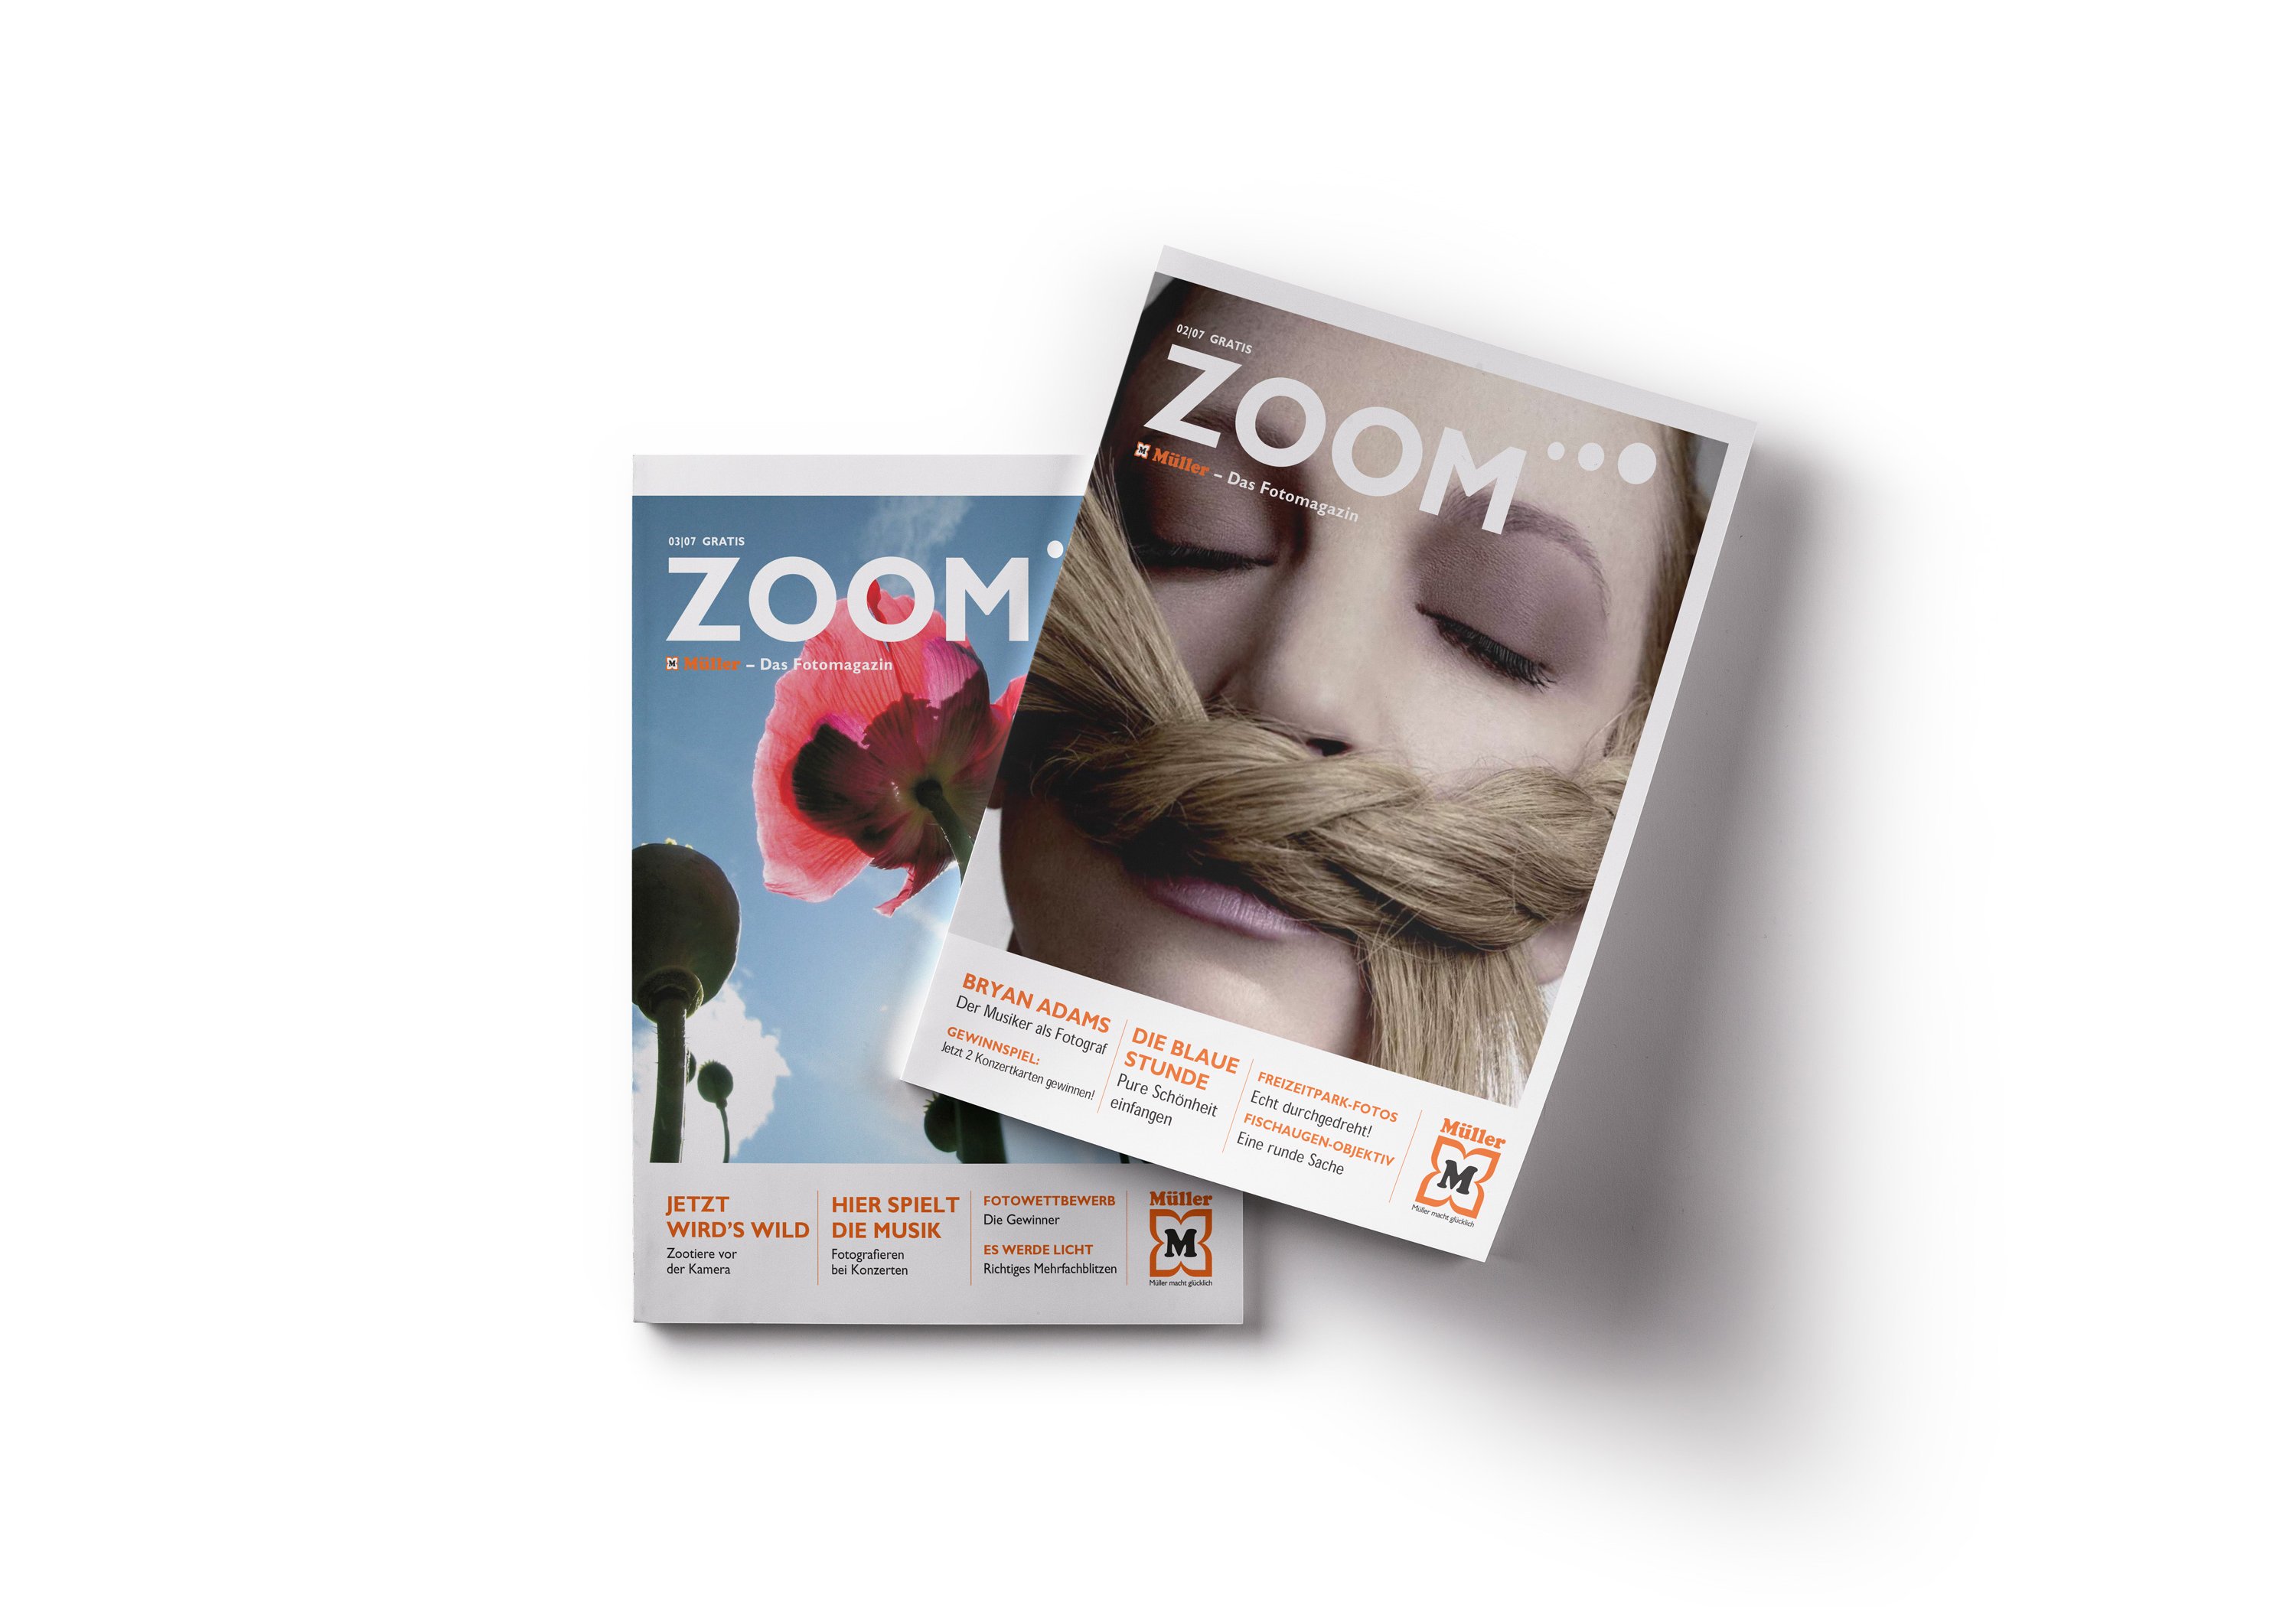 Excite Werbeagentur Müller zwei Zoom Magazine 